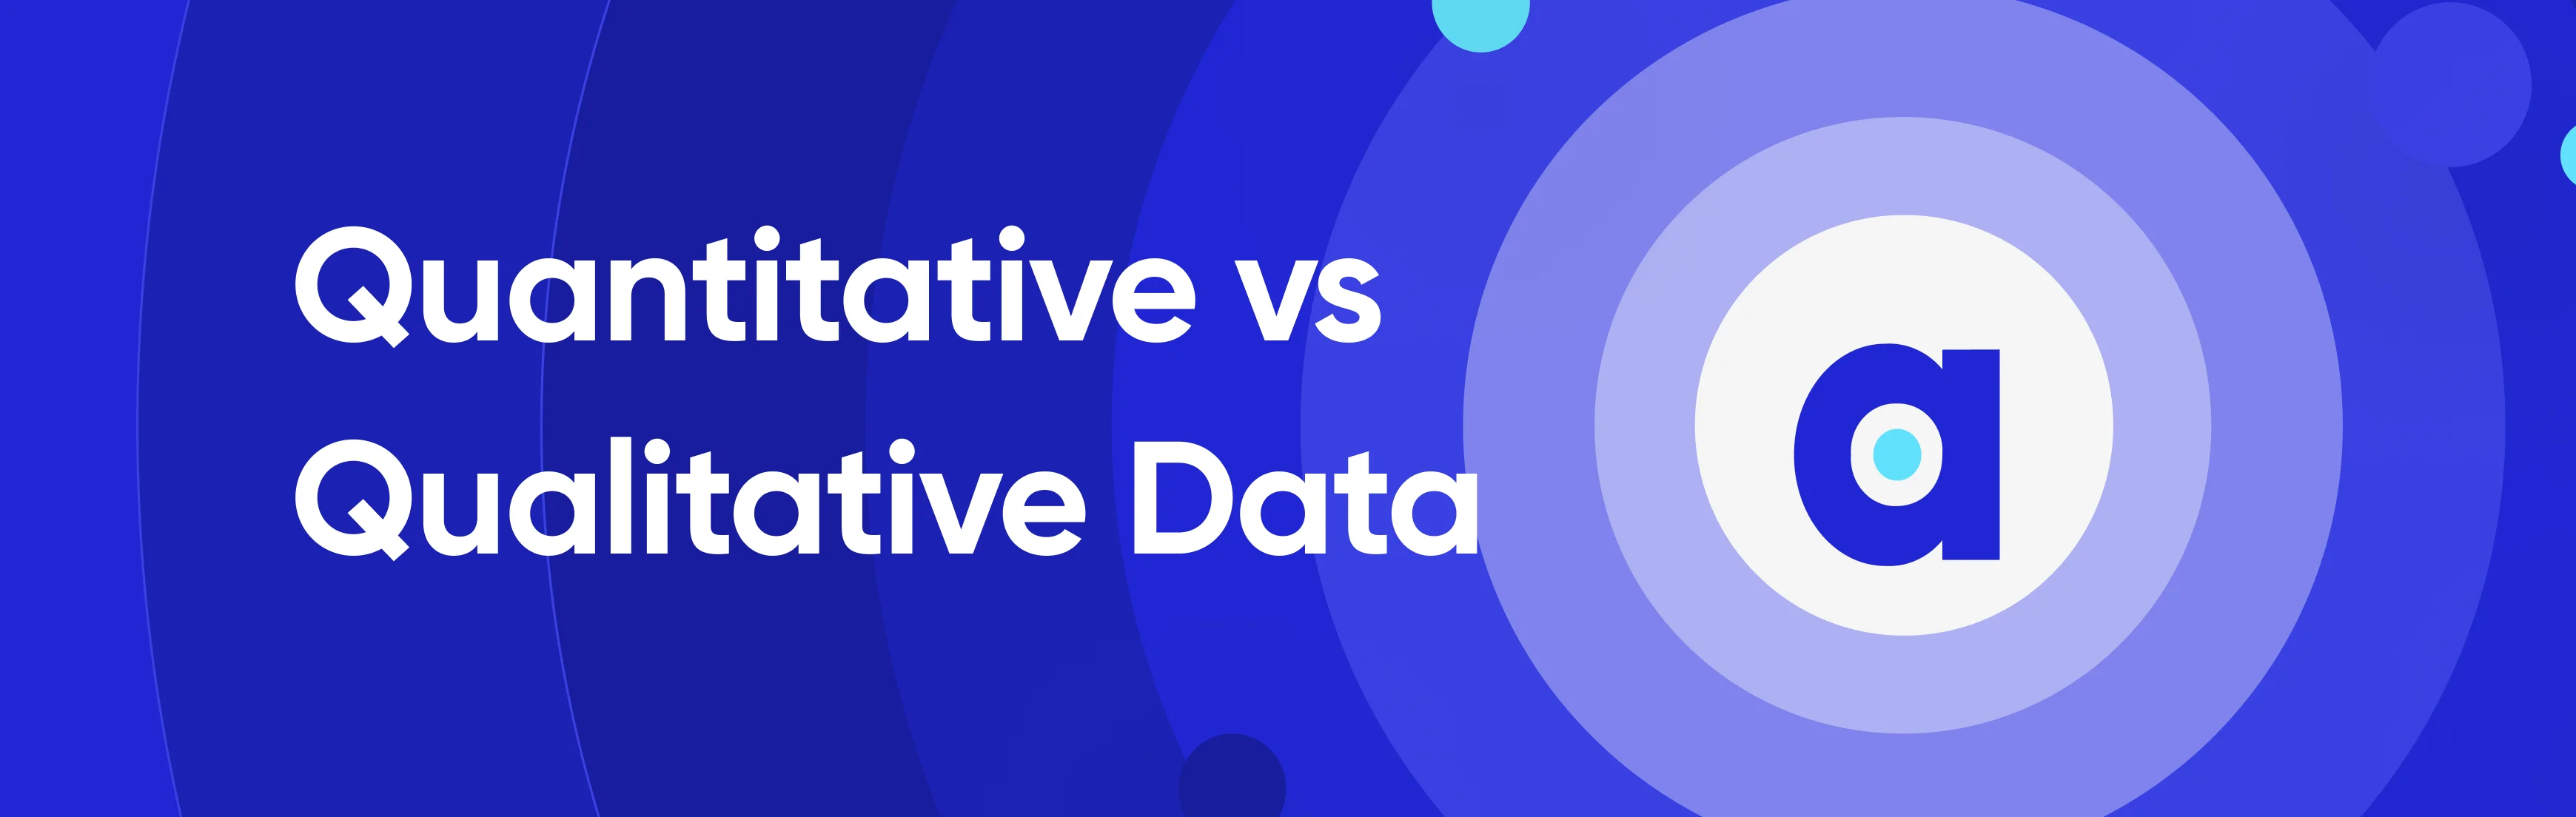 Quantitative vs Qualitative Data